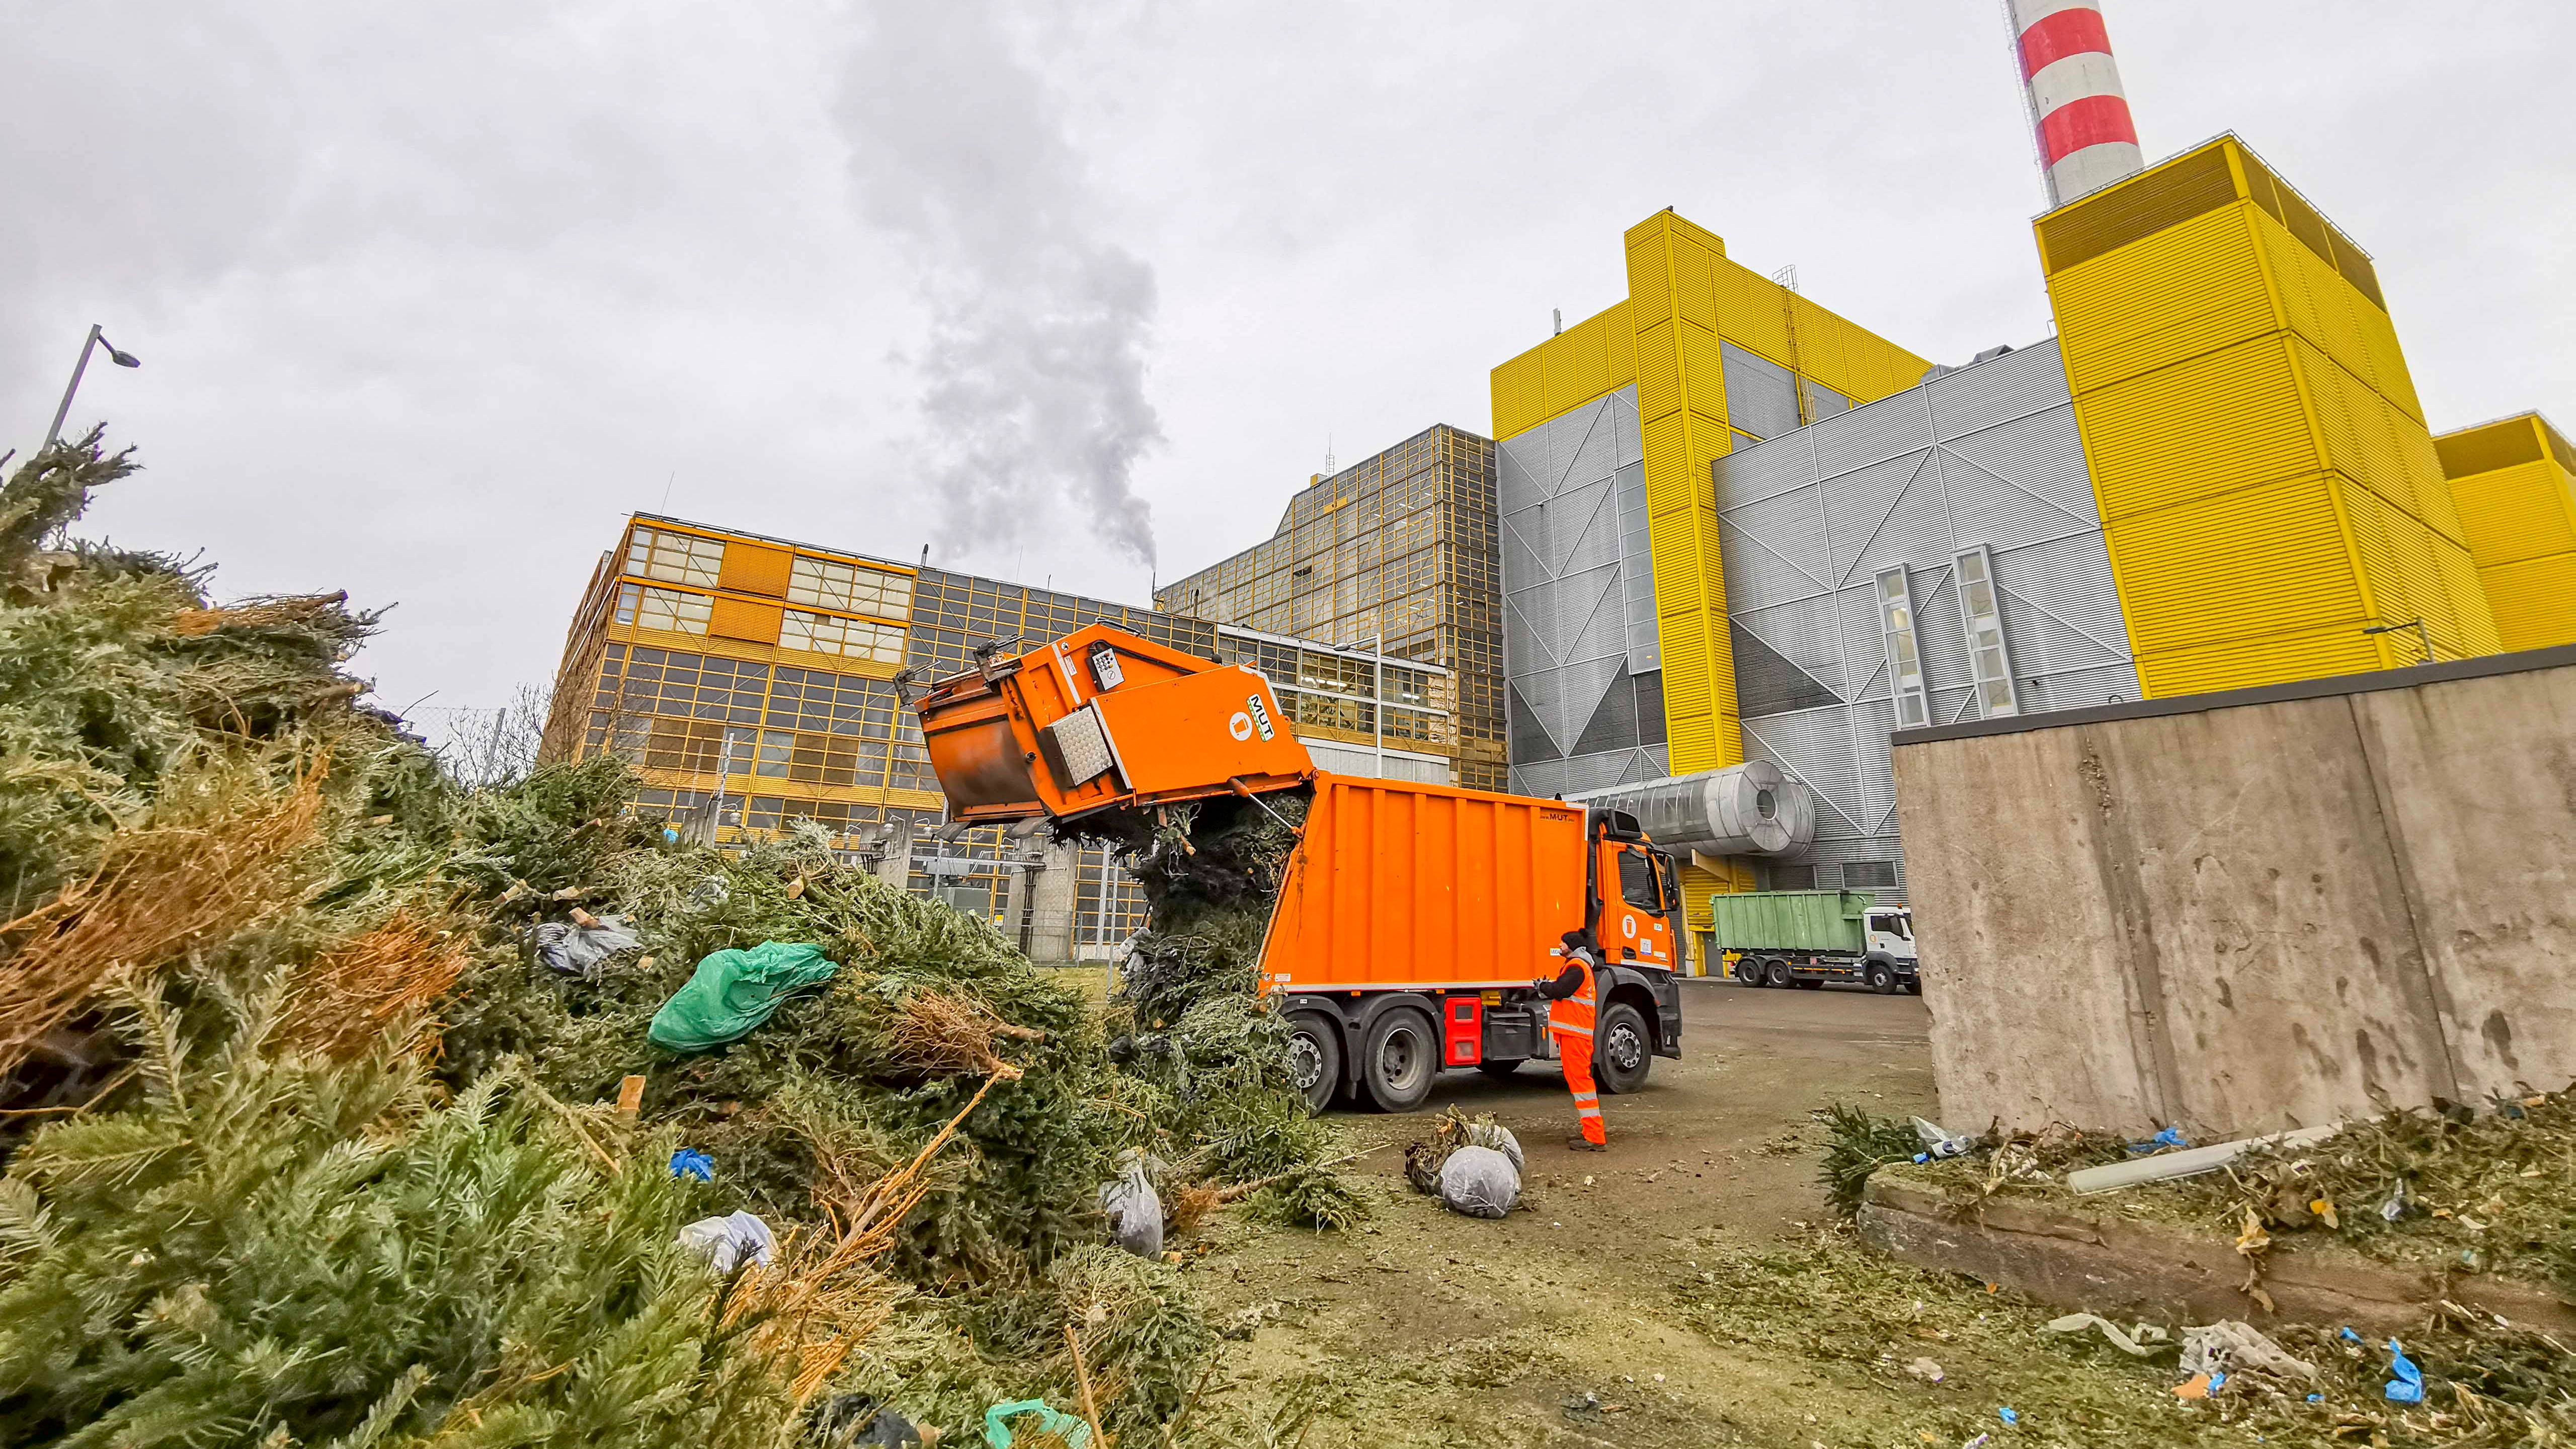 Rekordévet zártak a fővárosi hulladékgazdálkodás legjelentősebb erőművében